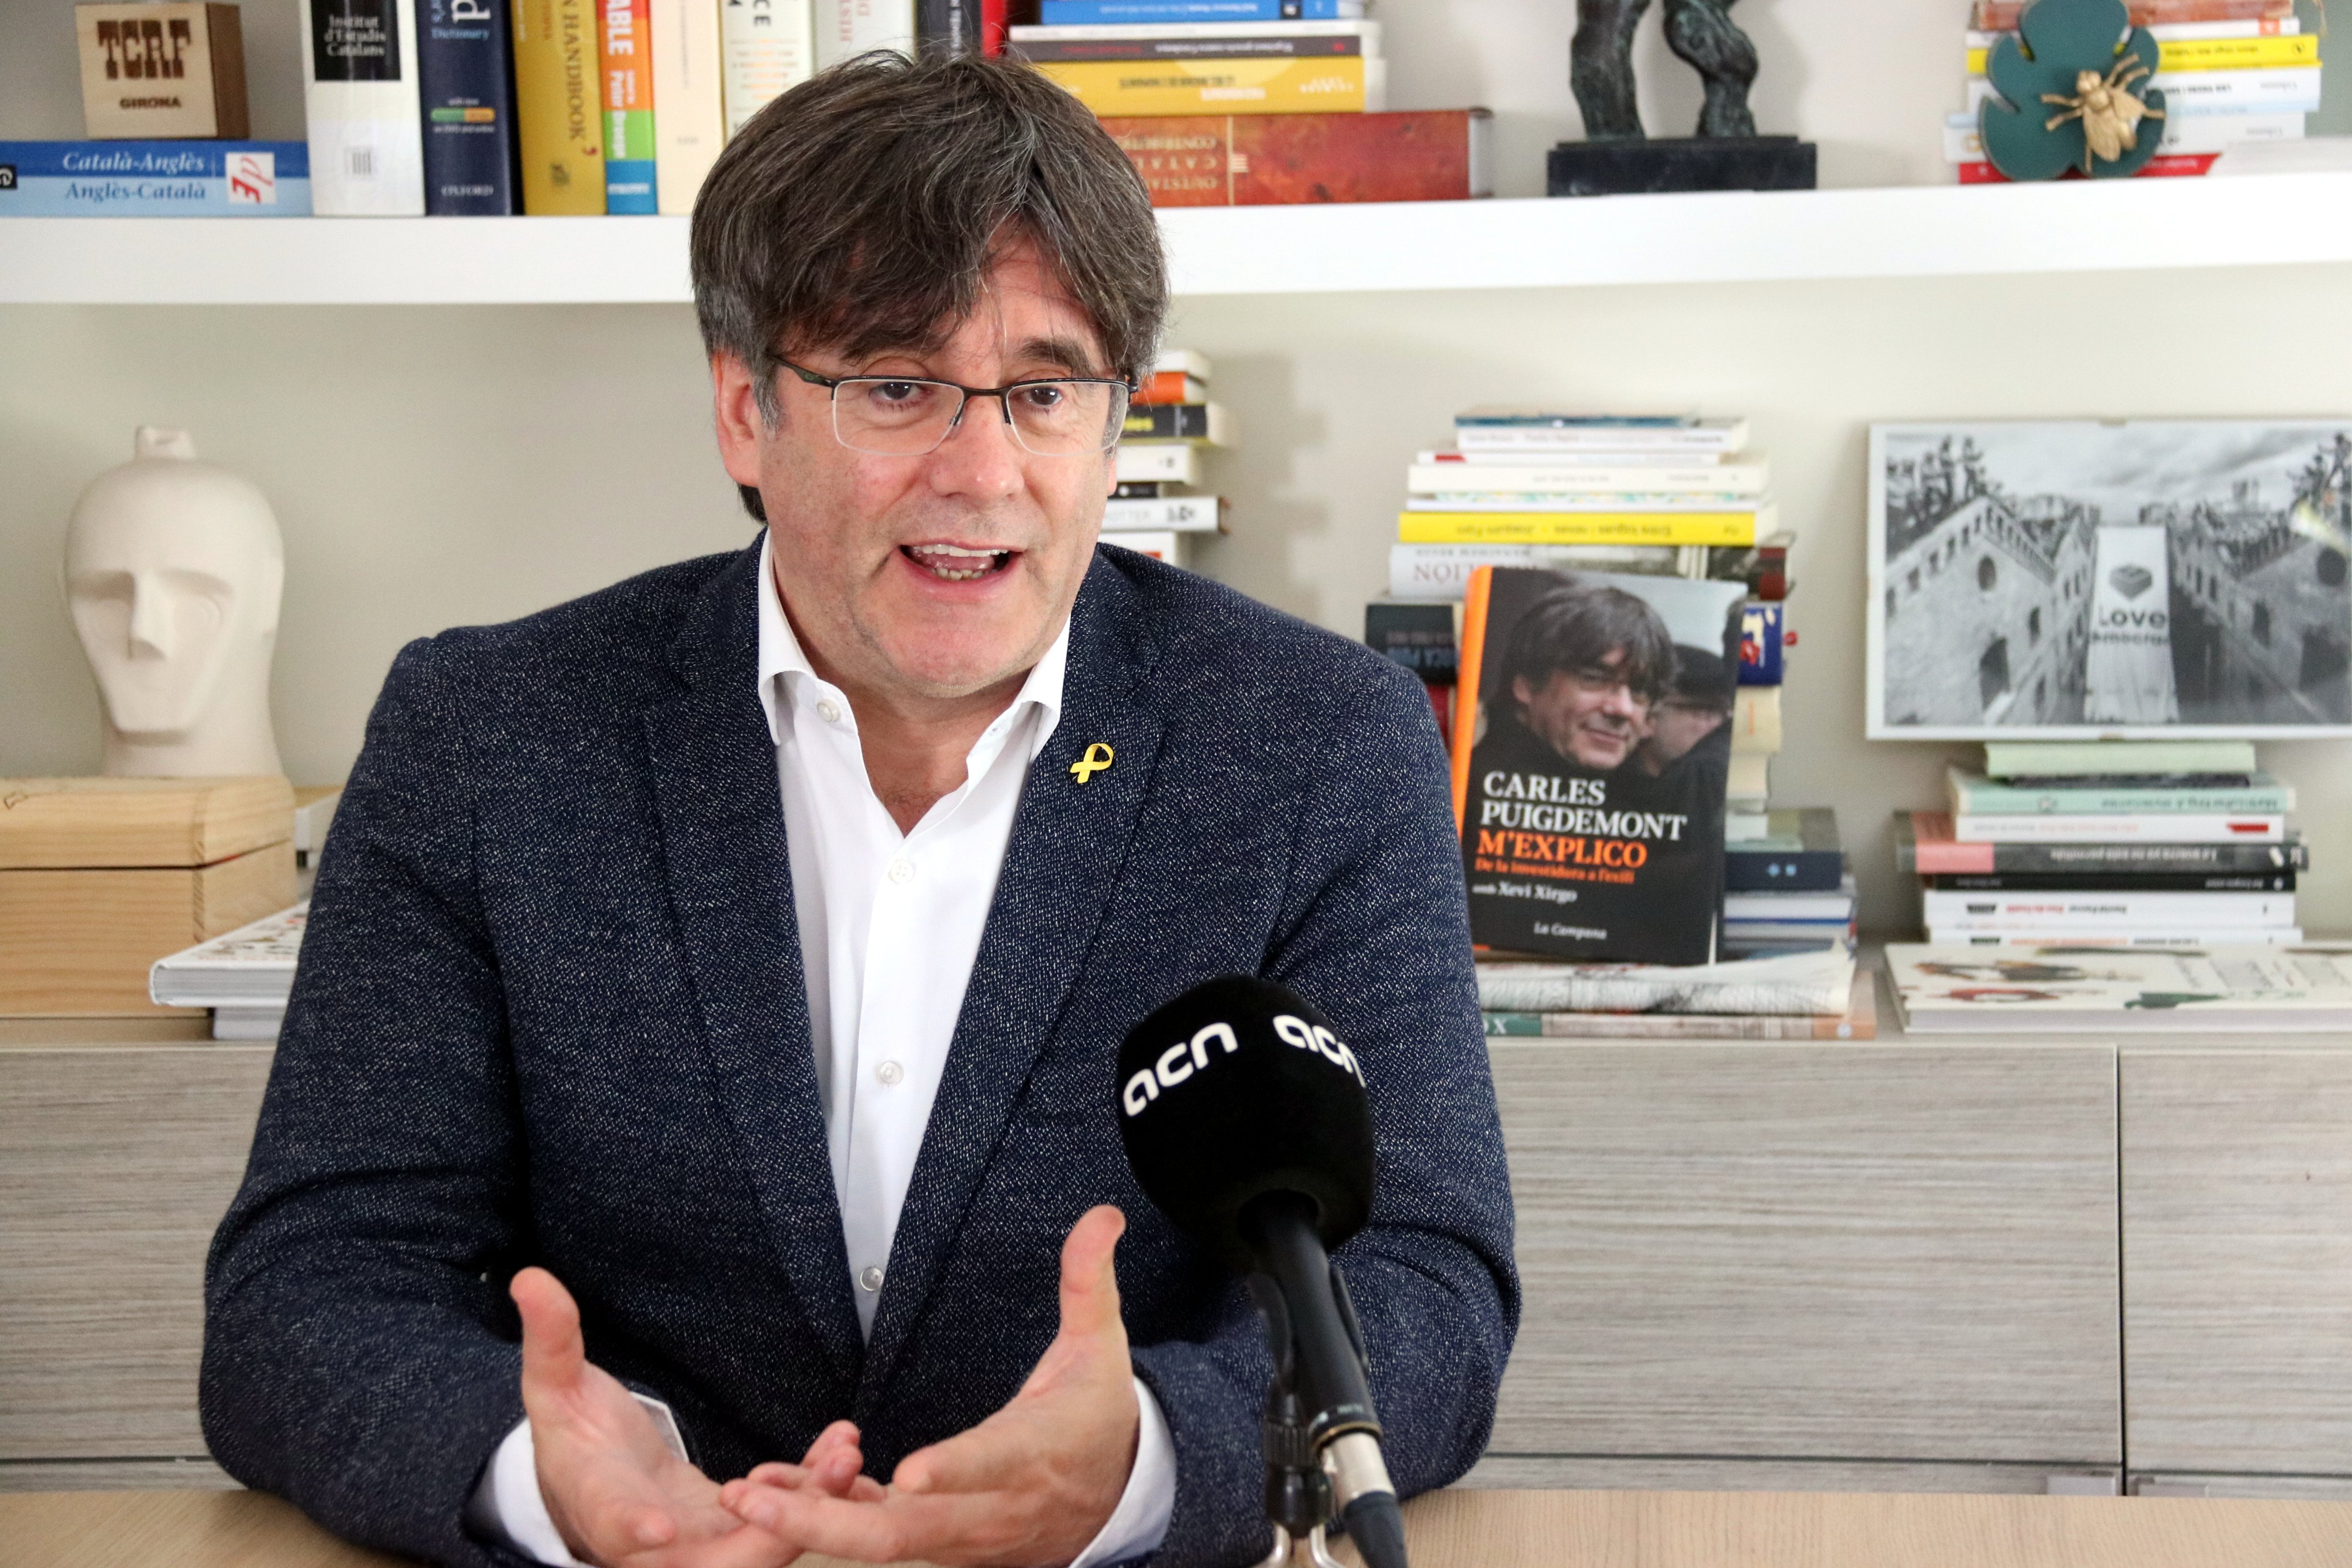 El libro "M'explico" de Puigdemont llega a la cuarta edición en un mes